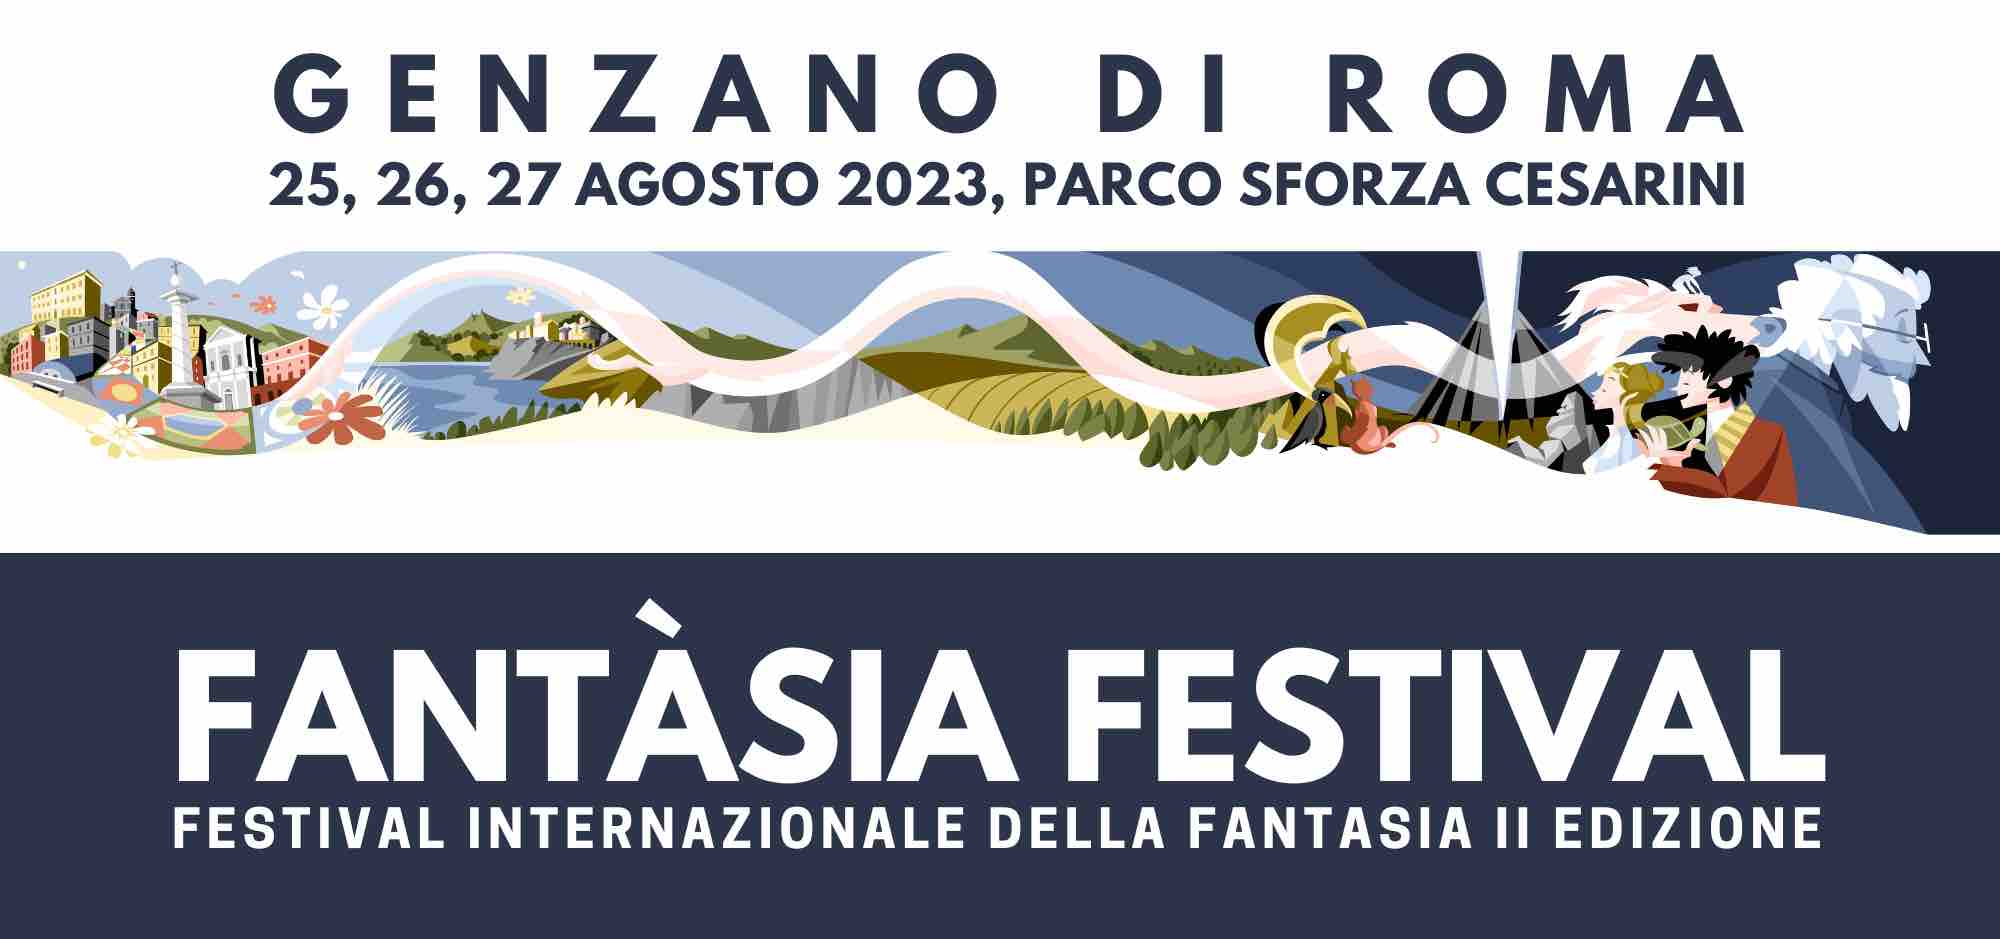 Festival internazionale della fantasia II edizione